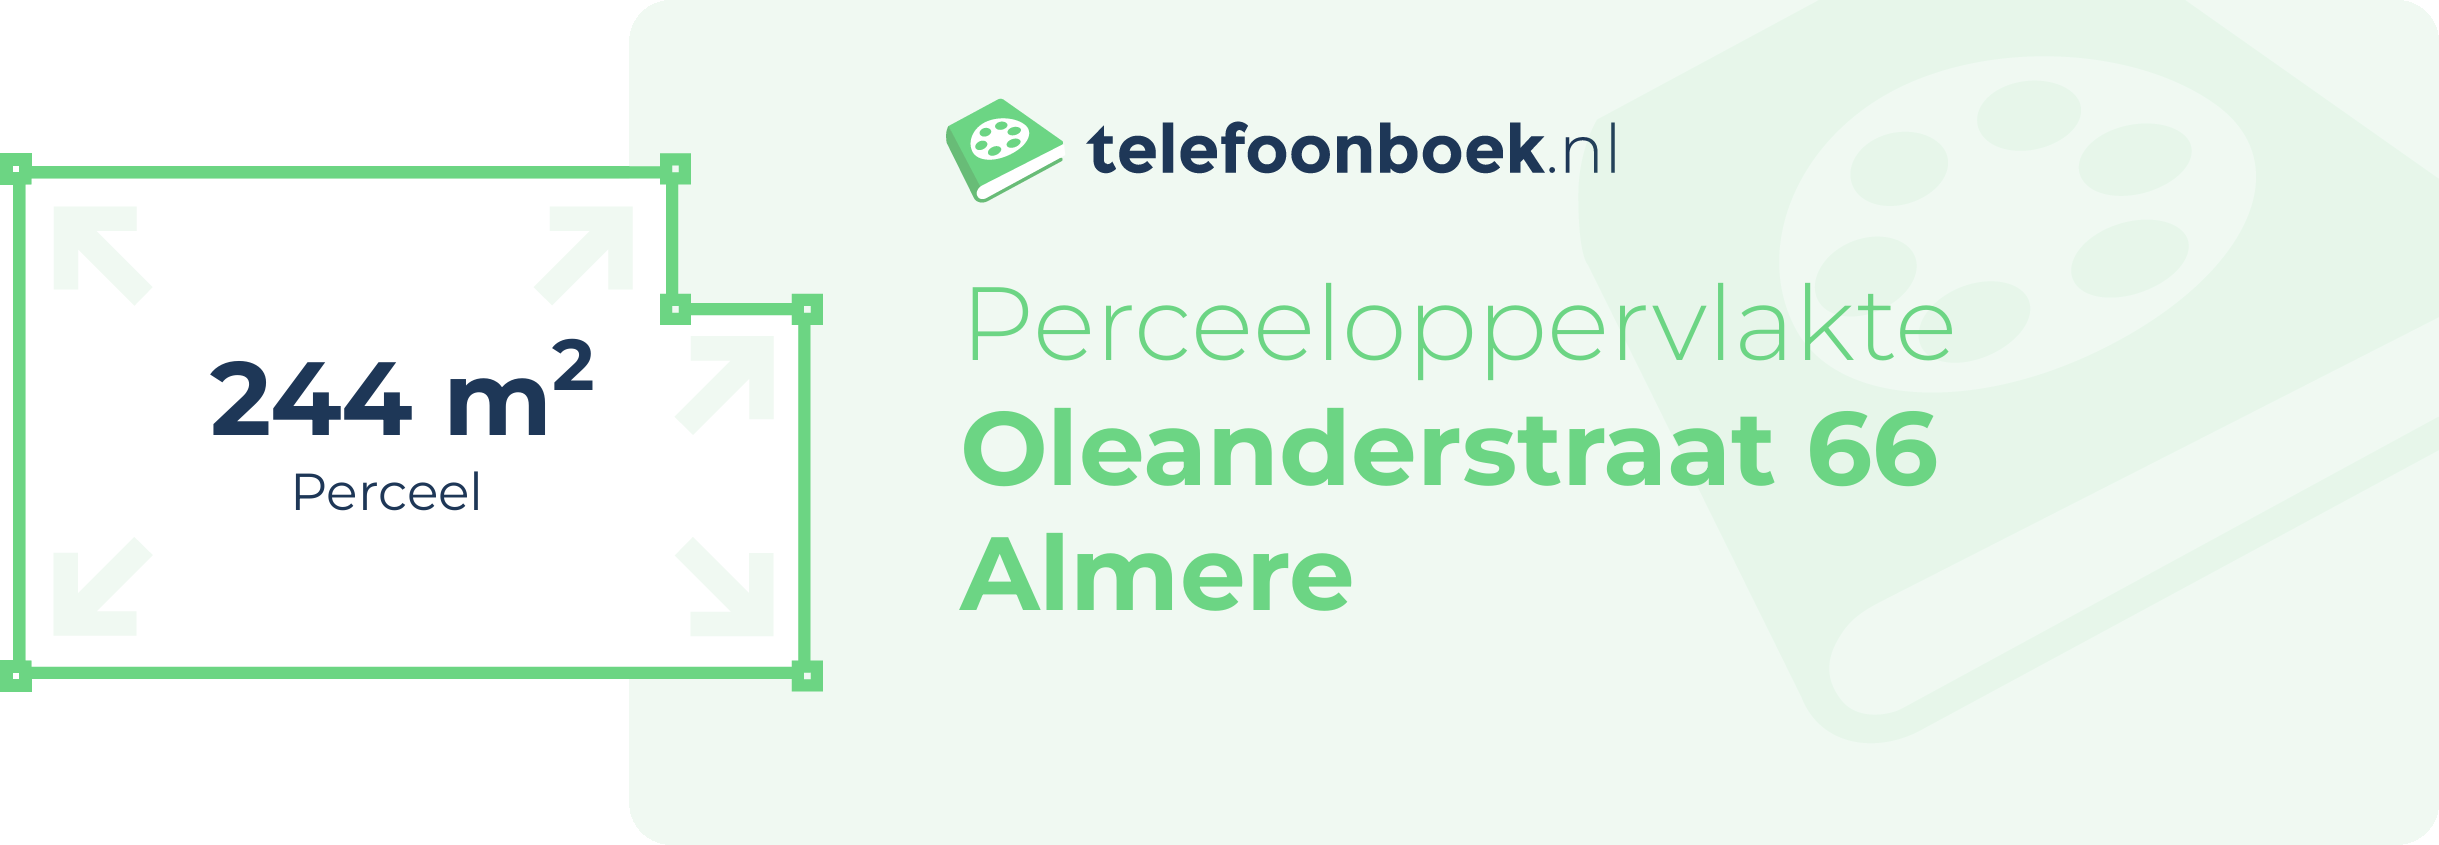 Perceeloppervlakte Oleanderstraat 66 Almere